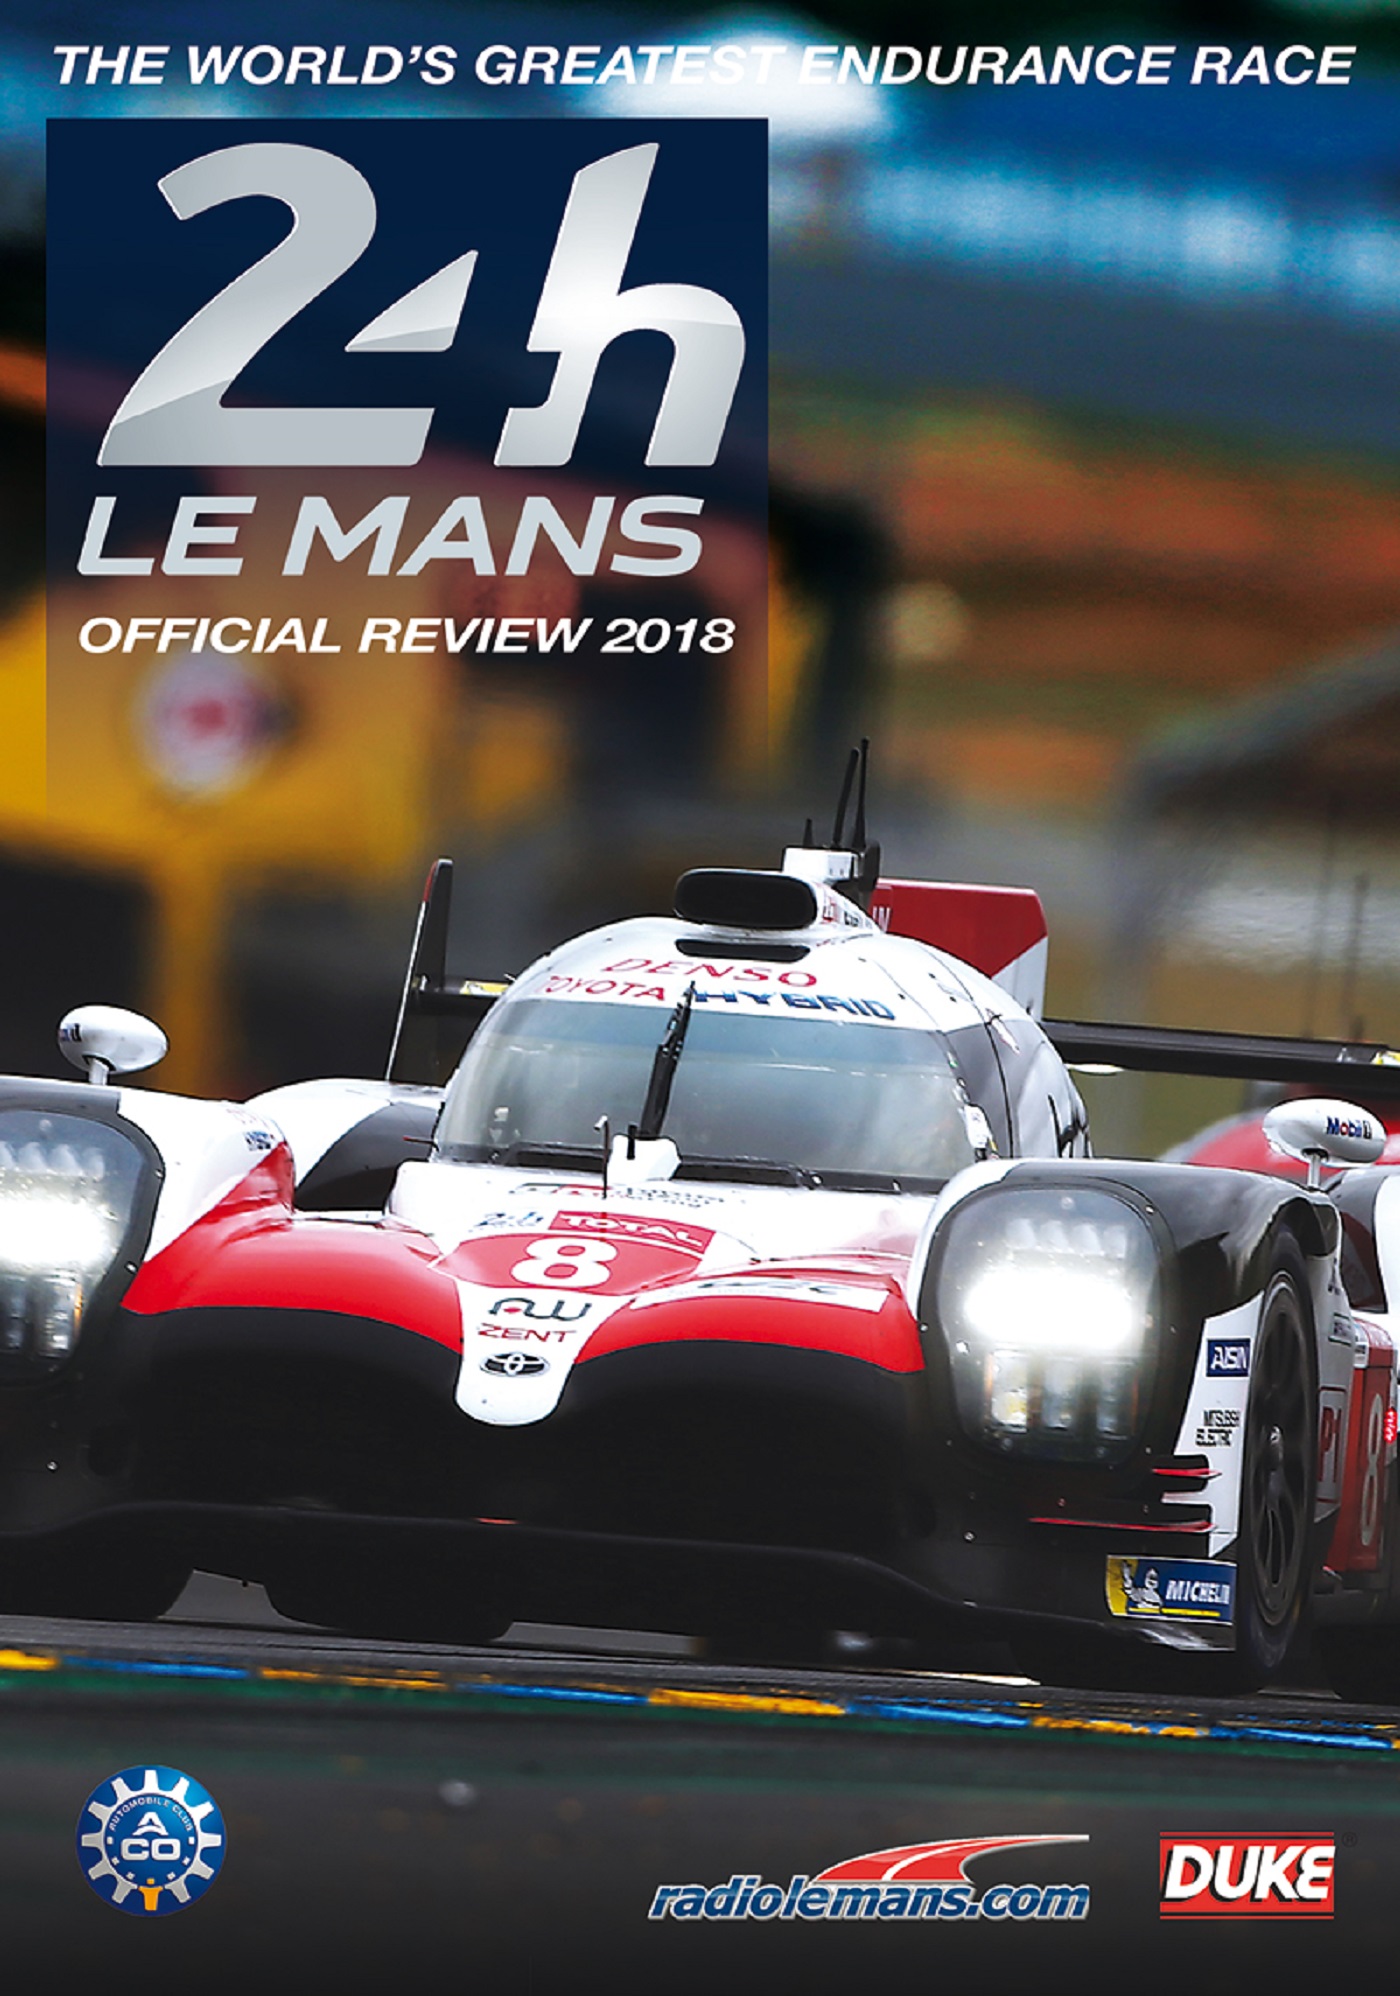 Le Mans 2018 Review - MVD Entertainment Group B2B